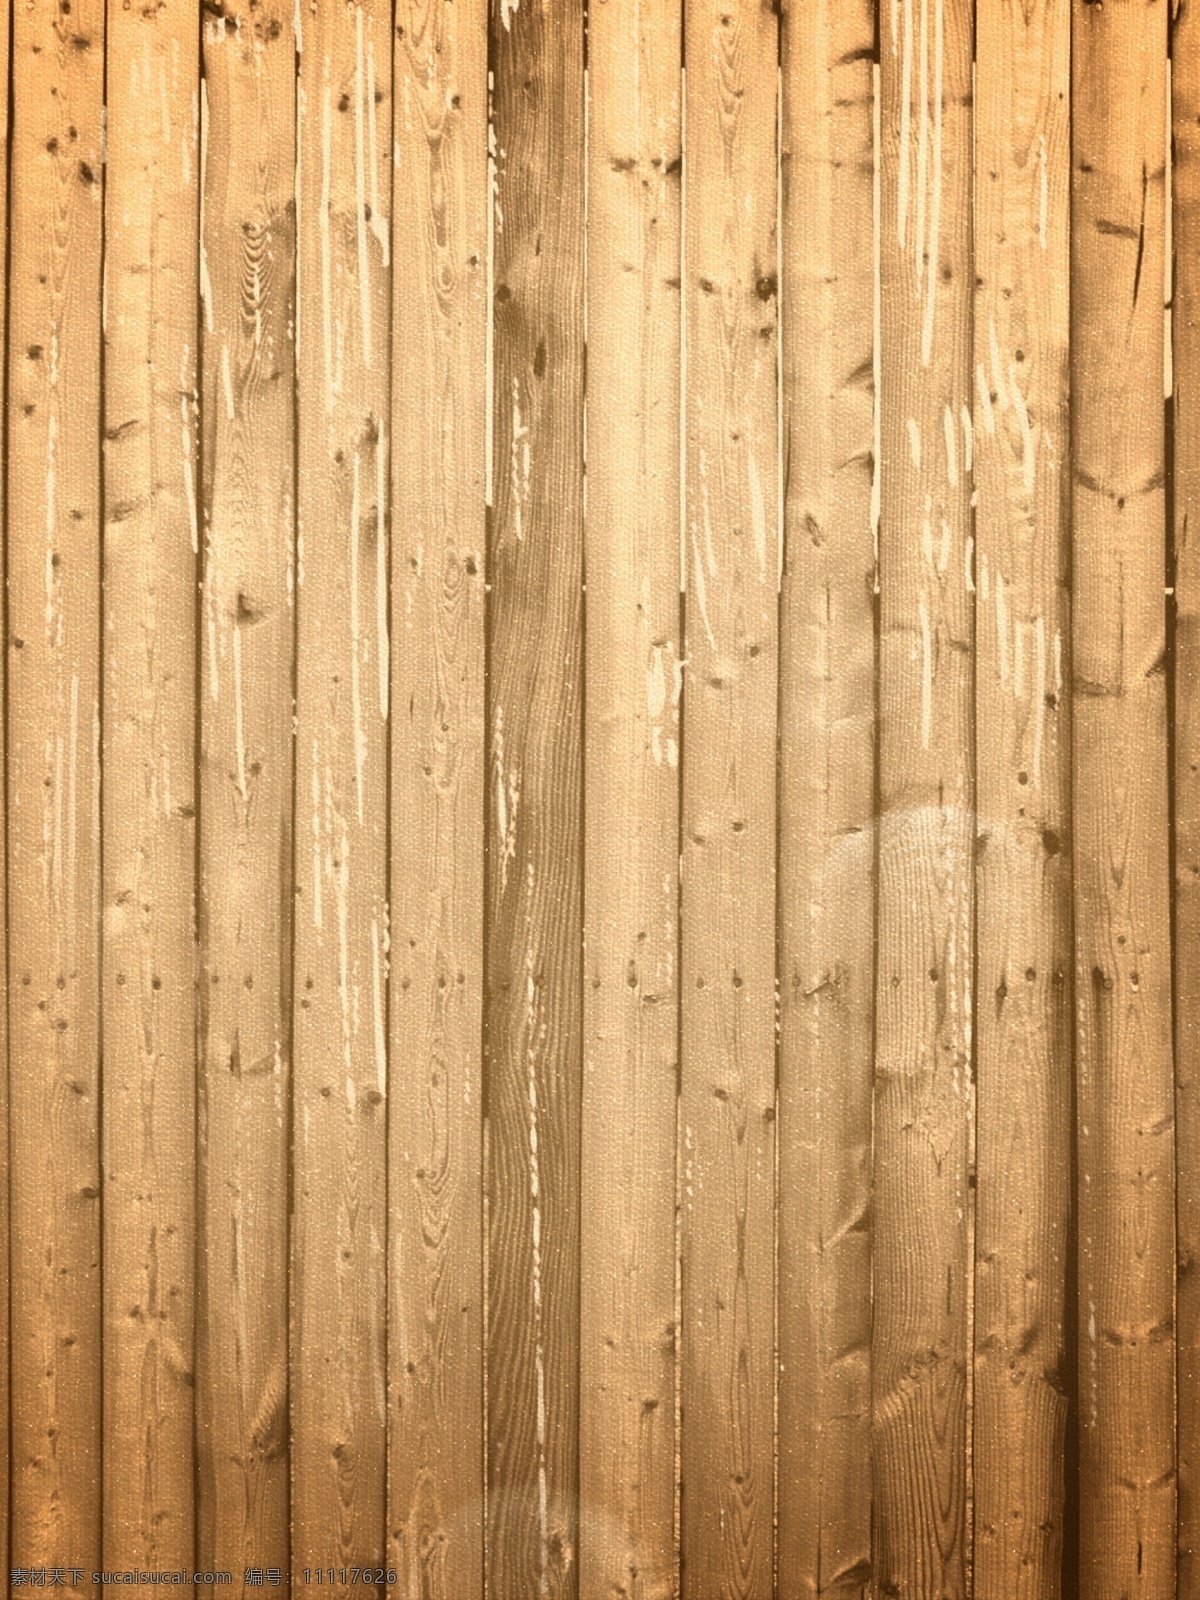 简约 原色 木木 纹 木板 背景 木纹素材 木纹背景 木头贴图 木纹木材 原木色